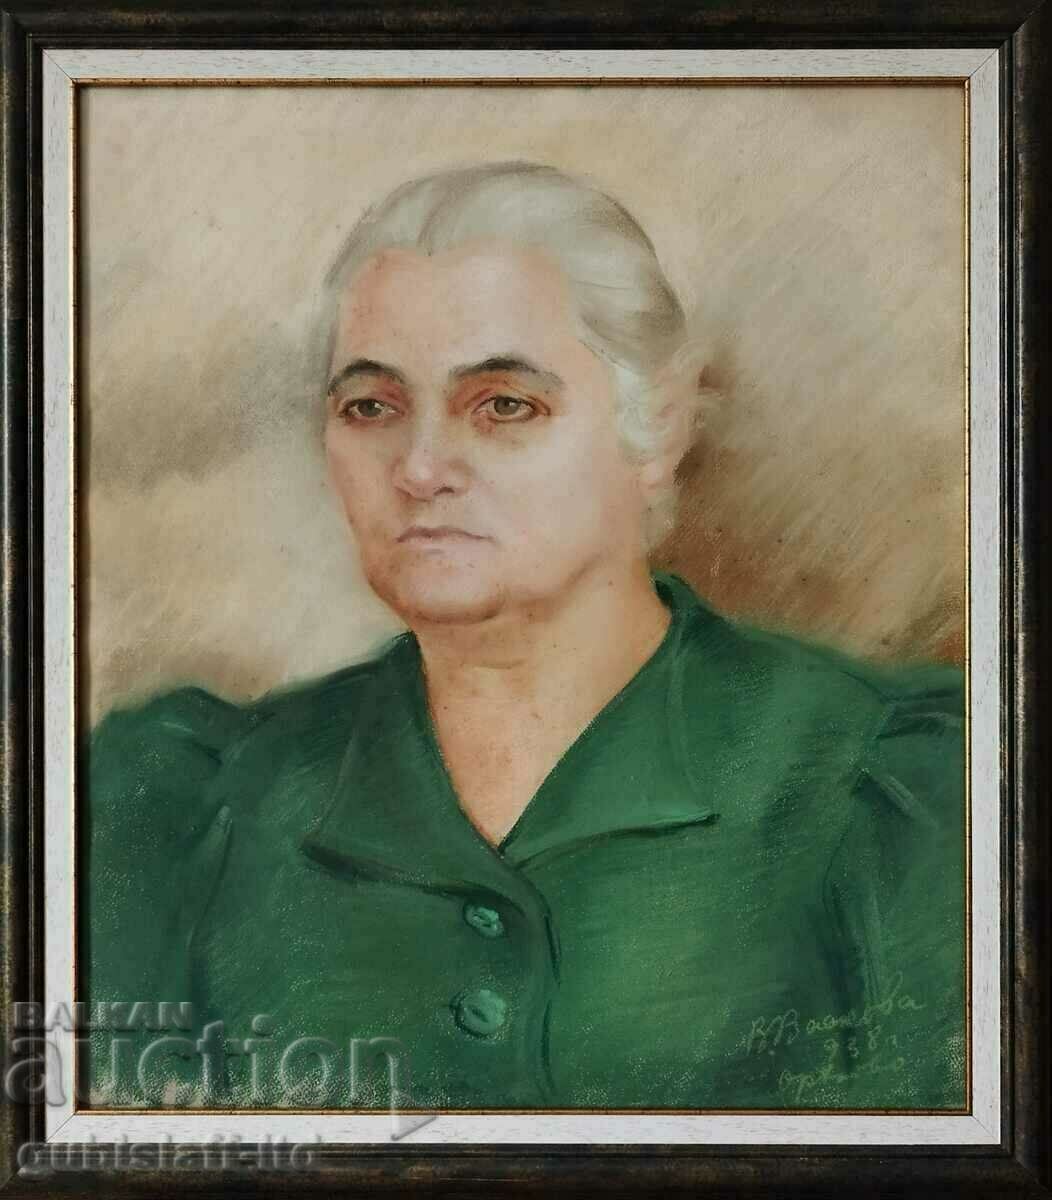 Ζωγραφική, πορτραίτο, 1938, τέχνη. Βάνια Βάσκοβα (1912-1995)